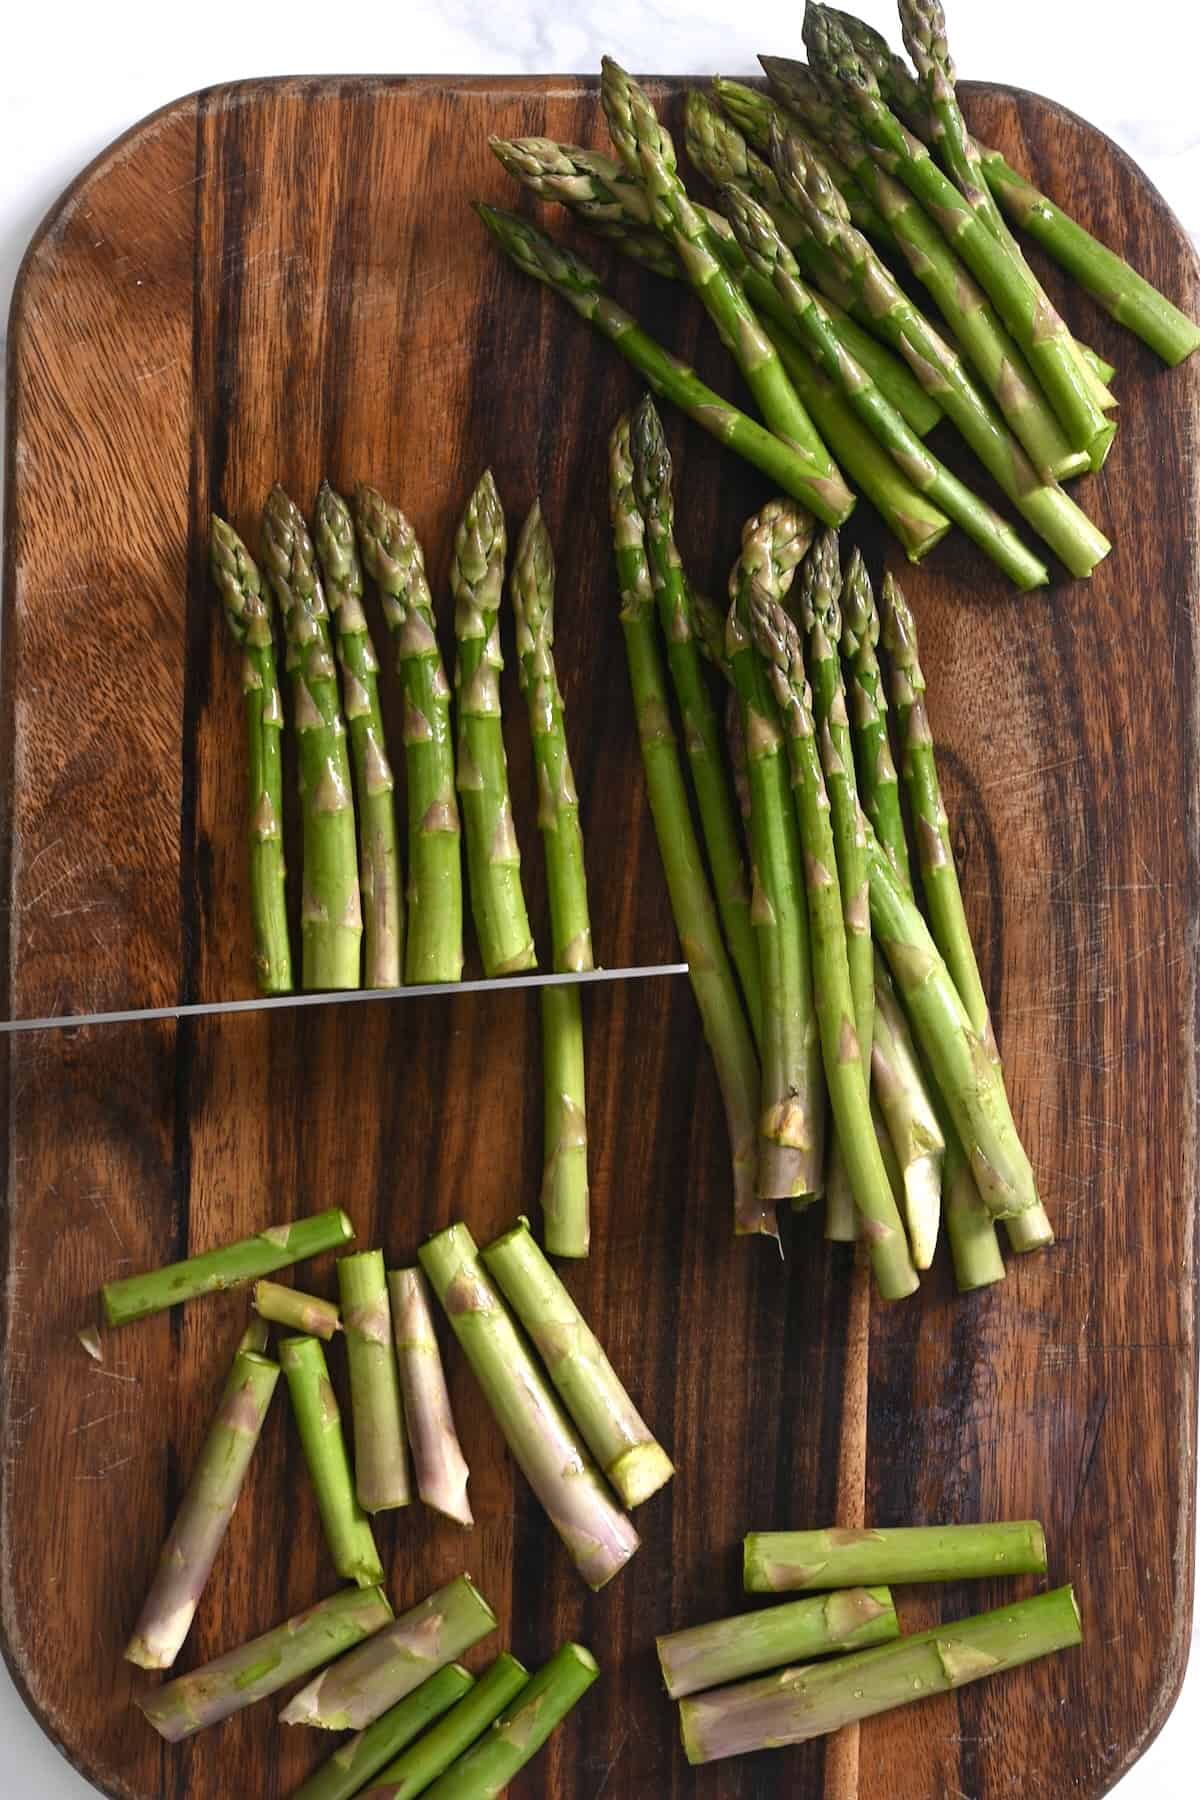 Cutting asparagus spears